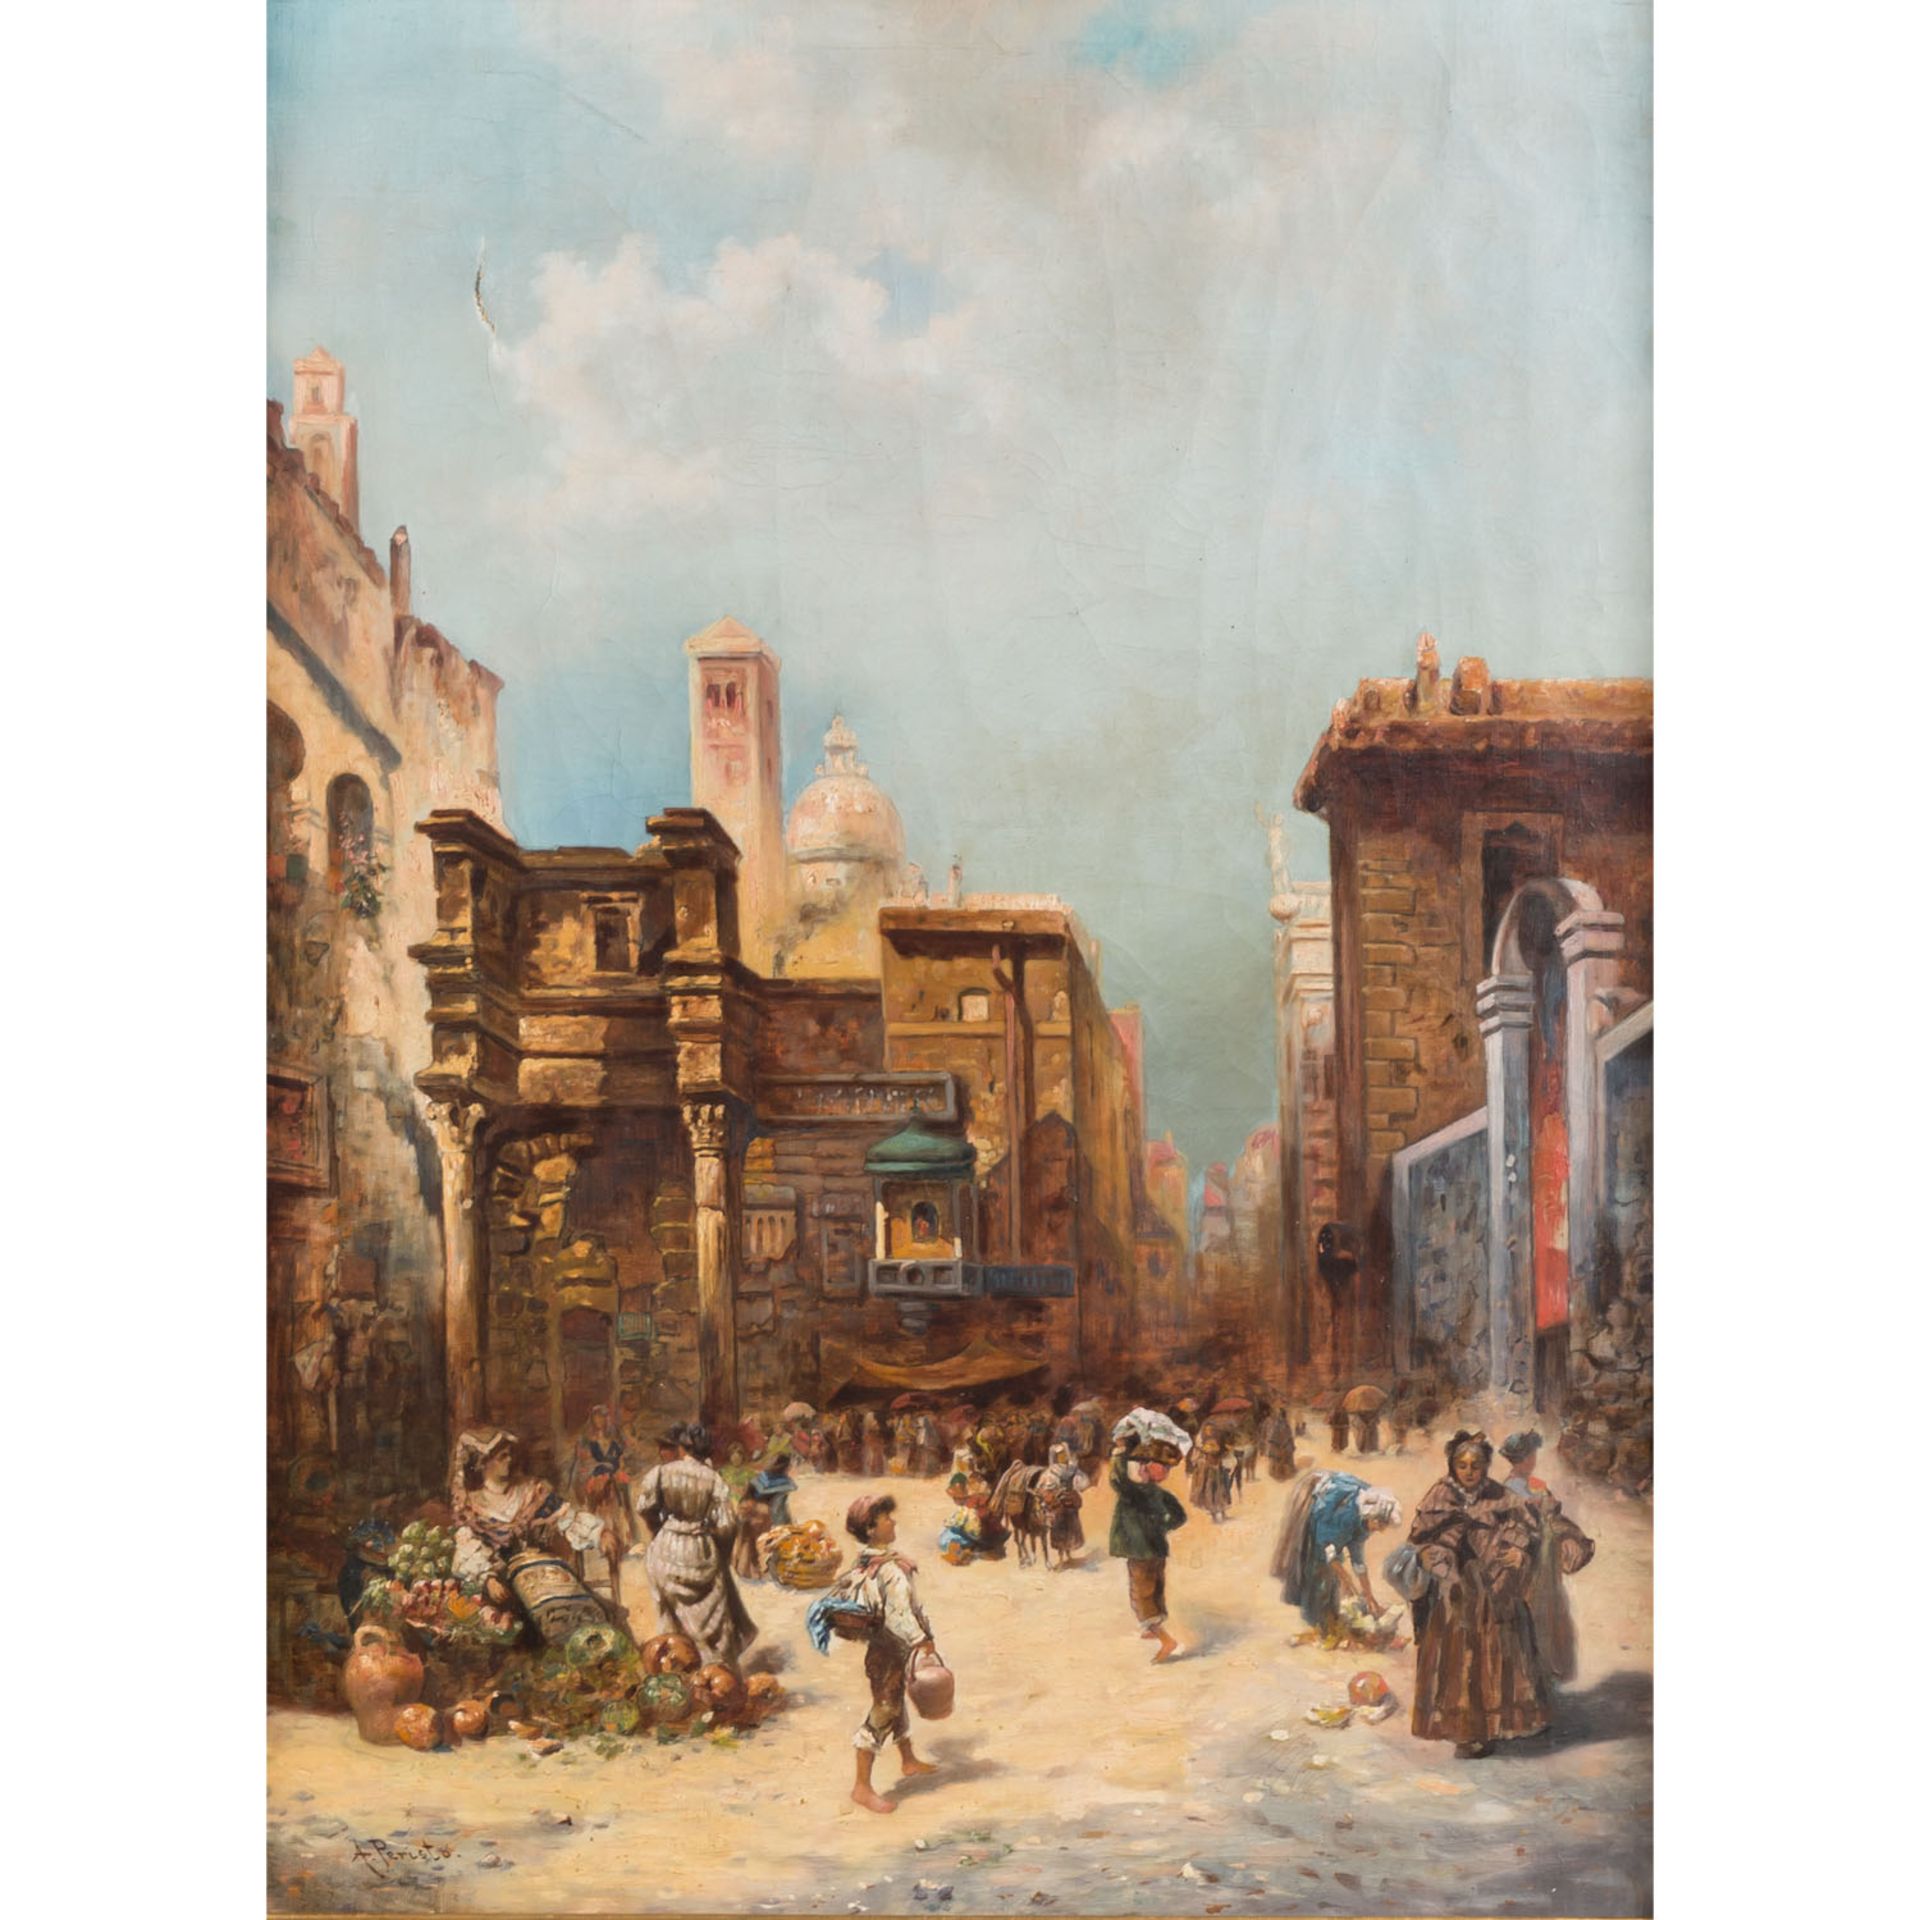 PERISTO, A. (Maler/in 19./20. Jh.), "Venedig", belebte Straßenszene mit Marktständen, u.li.